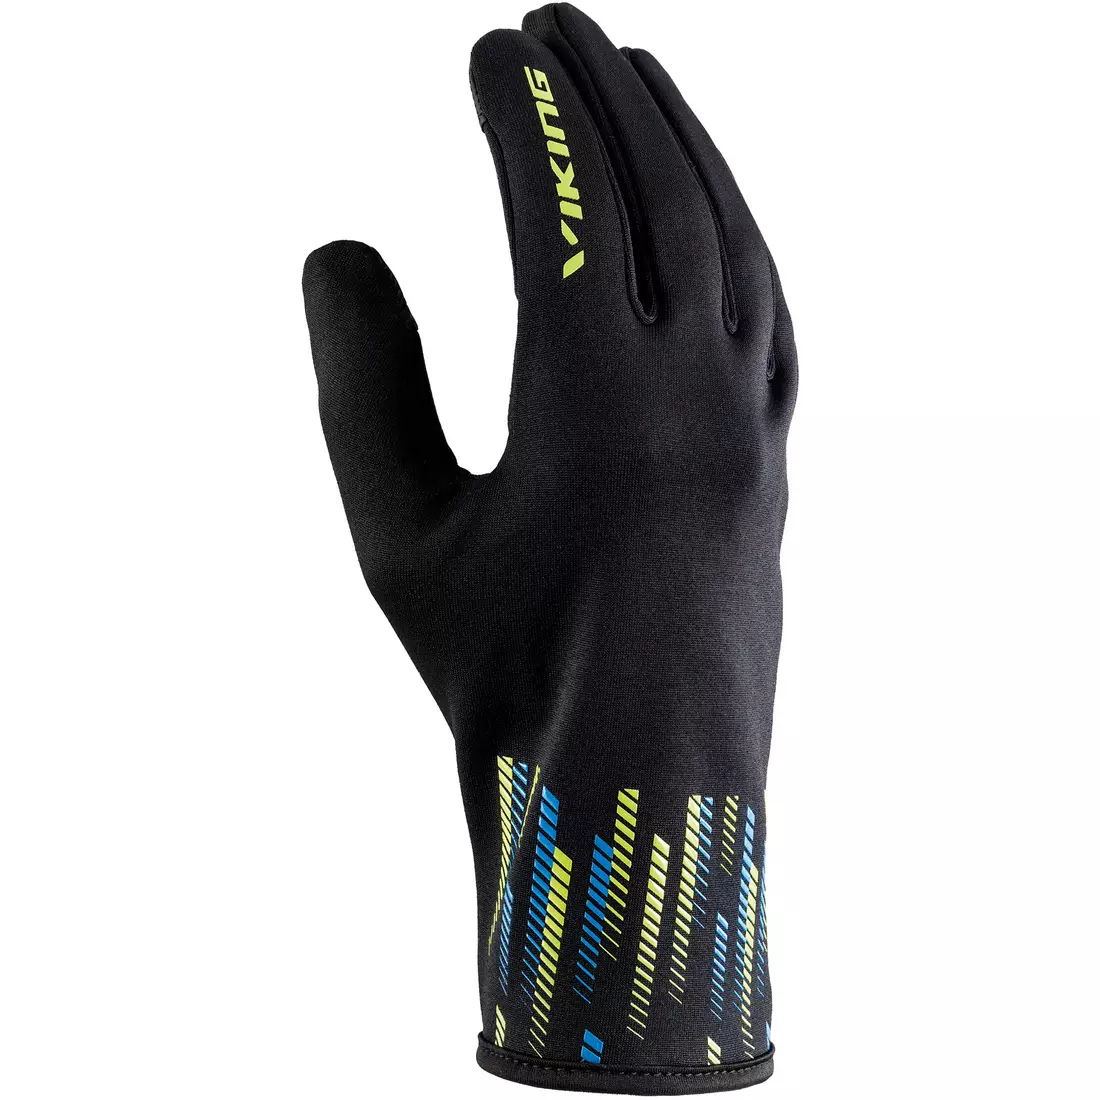 VIKING winter gloves BJORNEN MULTIFUNCTION black/lime 140/22/9451/64